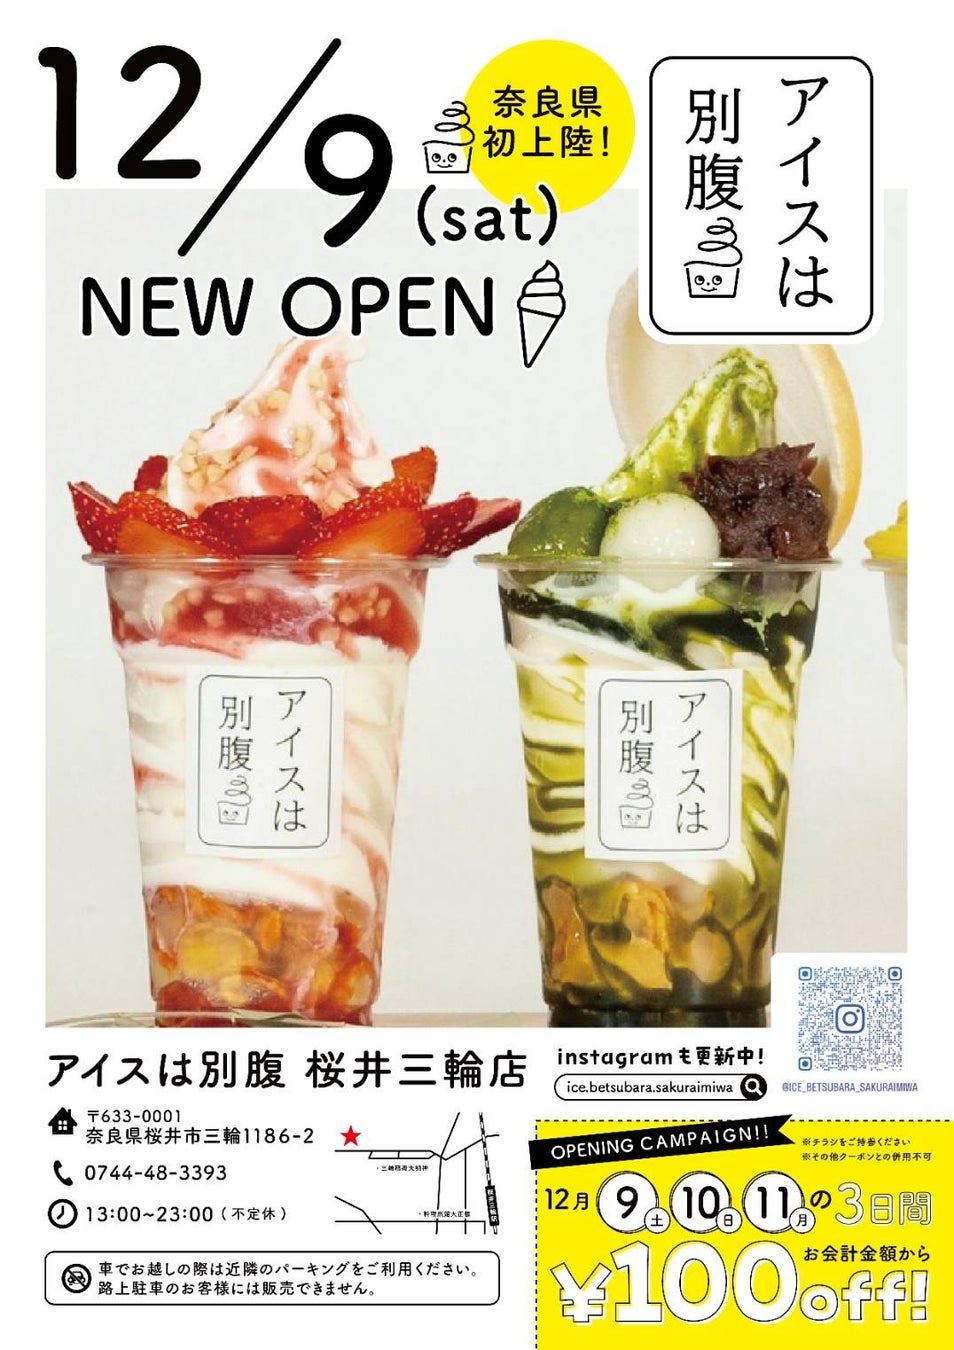 日本初！スイーツ専門店 Patisserie　Kyohei Mikamiが
「アミュリア」を使用した焼菓子
「ハイファイバーサブレ」を販売開始